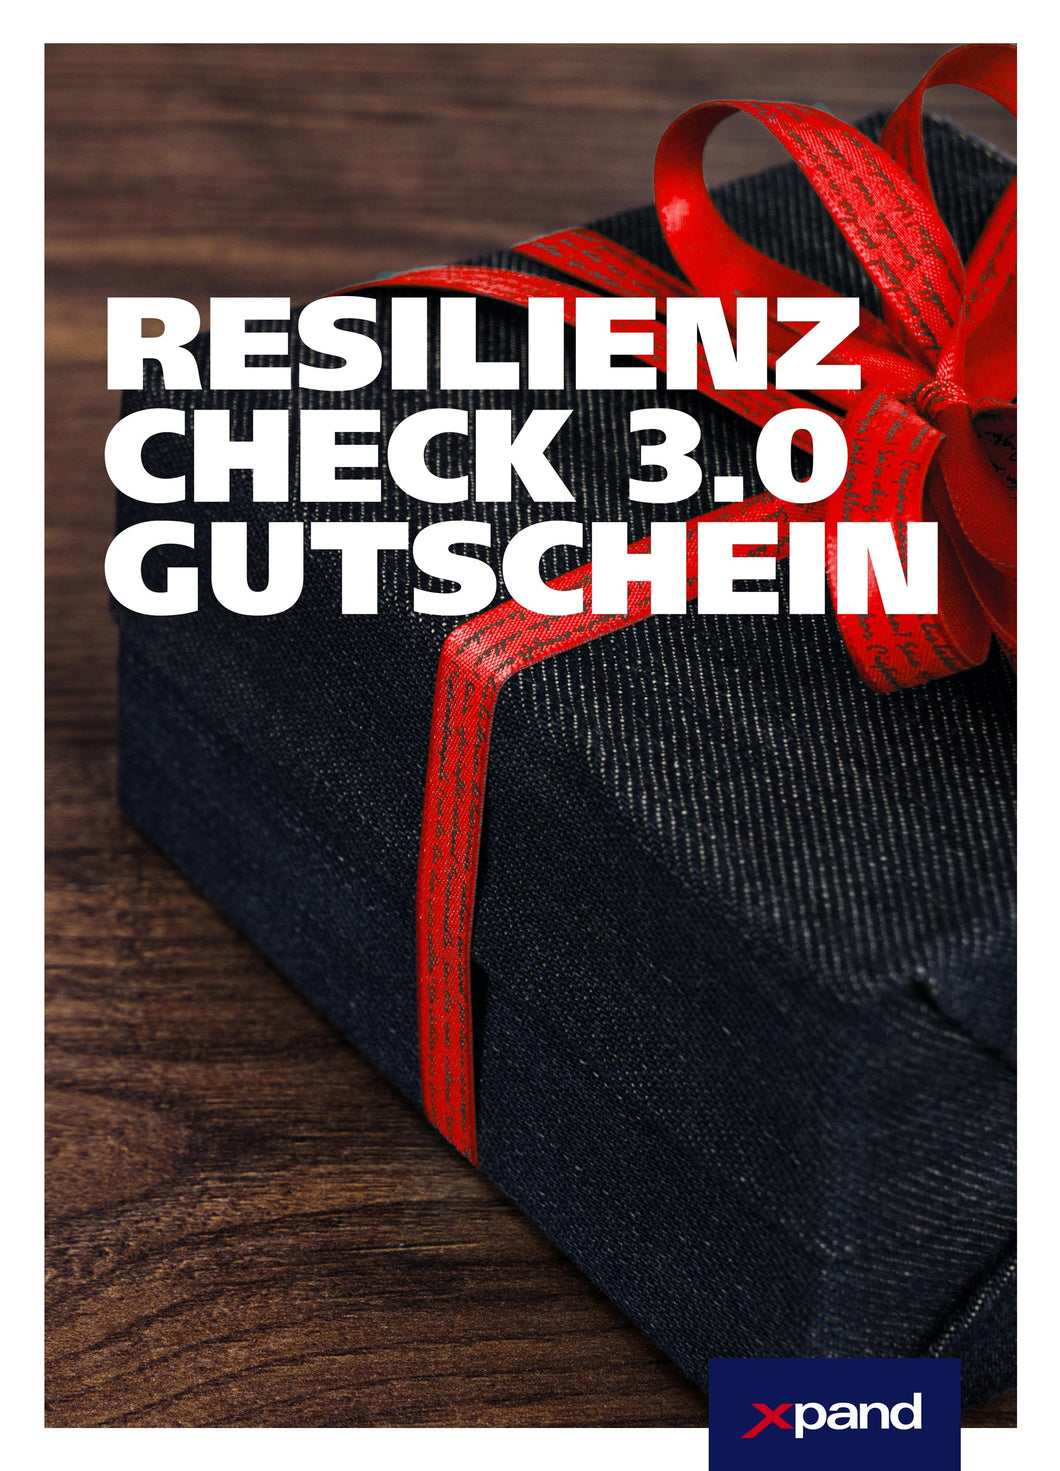 Geschenk Gutschein: Resilienz Check 3.0 (M)